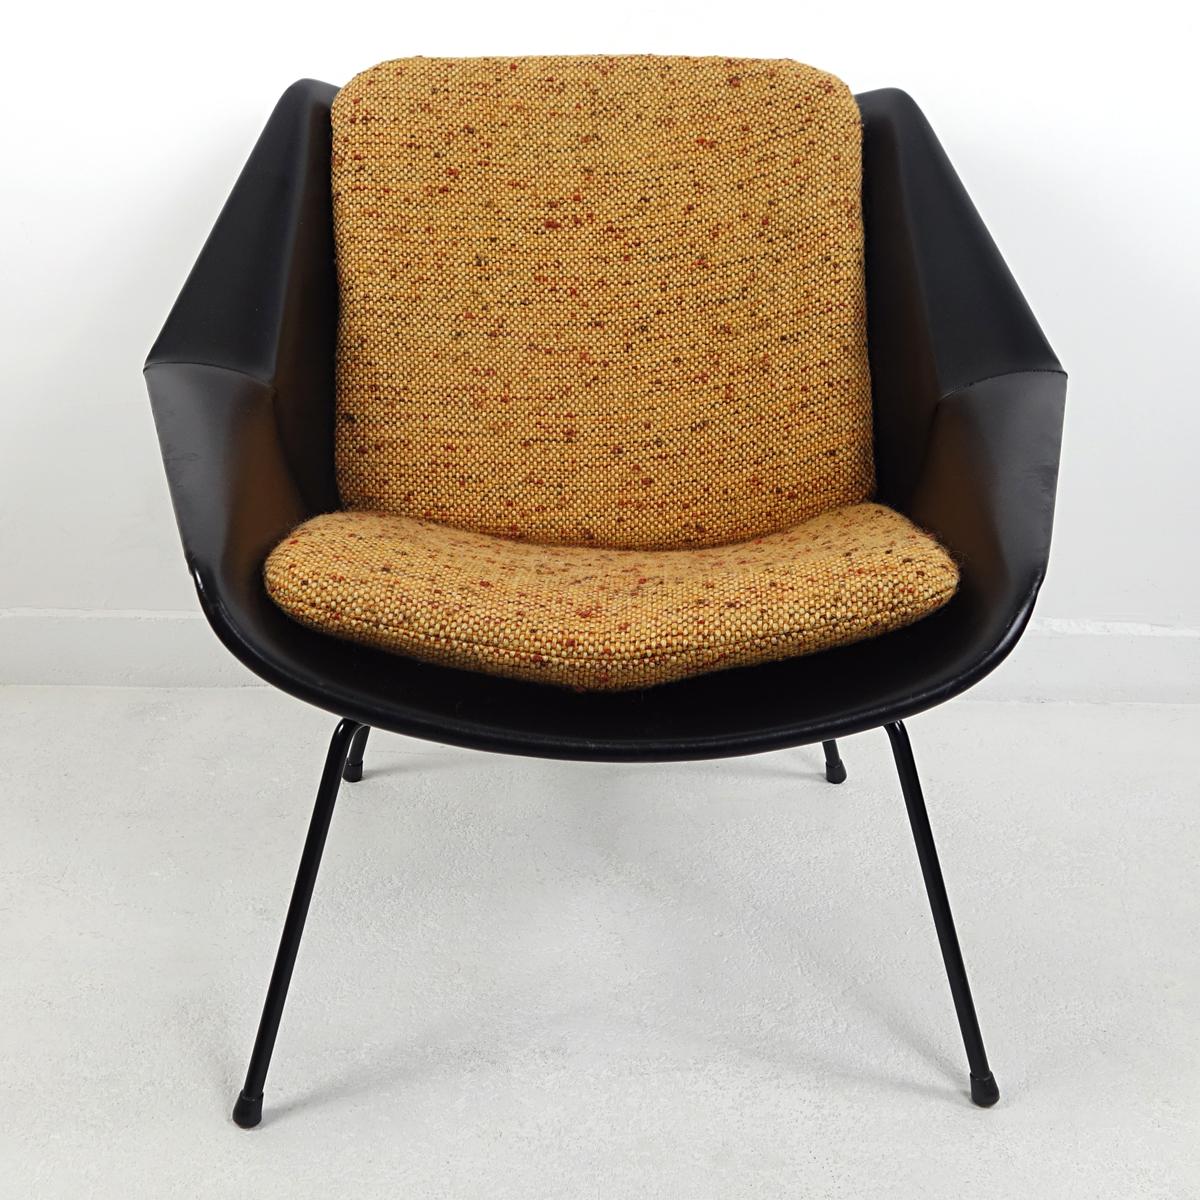 Ce fauteuil a été conçu par Cees Braakman dans les années 1950 pour le célèbre fabricant de meubles néerlandais Pastoe. Sa coque est recouverte de vinyle noir et repose sur quatre pieds en acier noir de forme élégante. La coque accueille deux